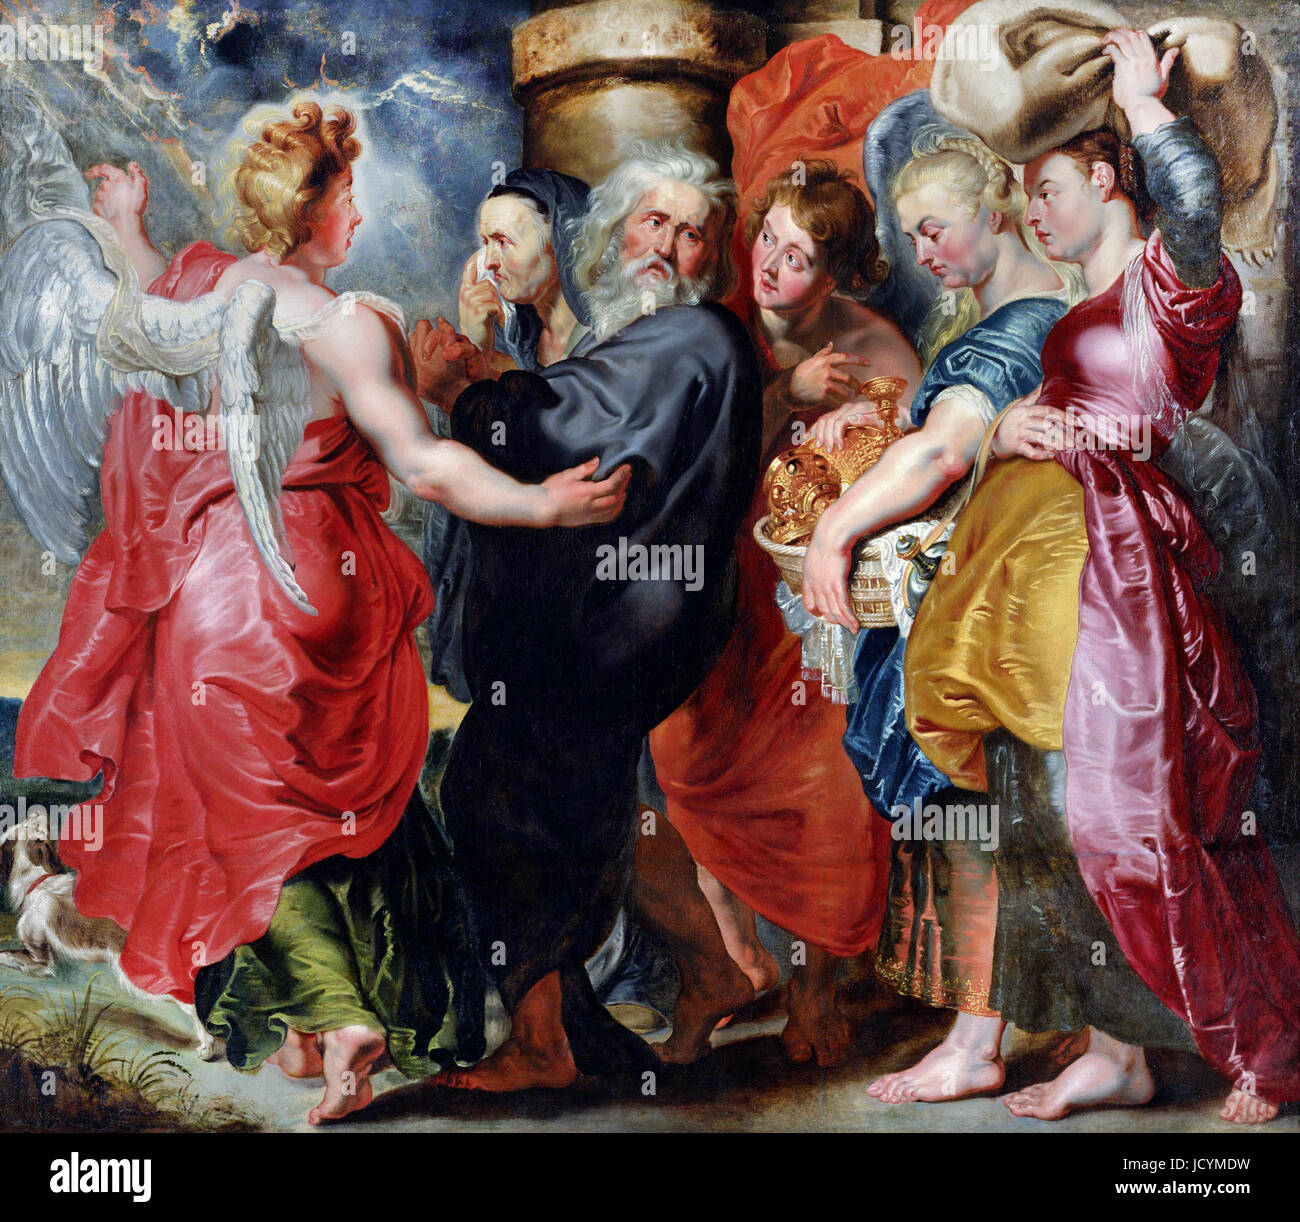 Jacob Jordaens, le vol du Lot et sa famille de Sodome (d'après Rubens). Vers 1618-20. Huile sur toile. National Museum of Western Art, Tokyo, Japon Banque D'Images